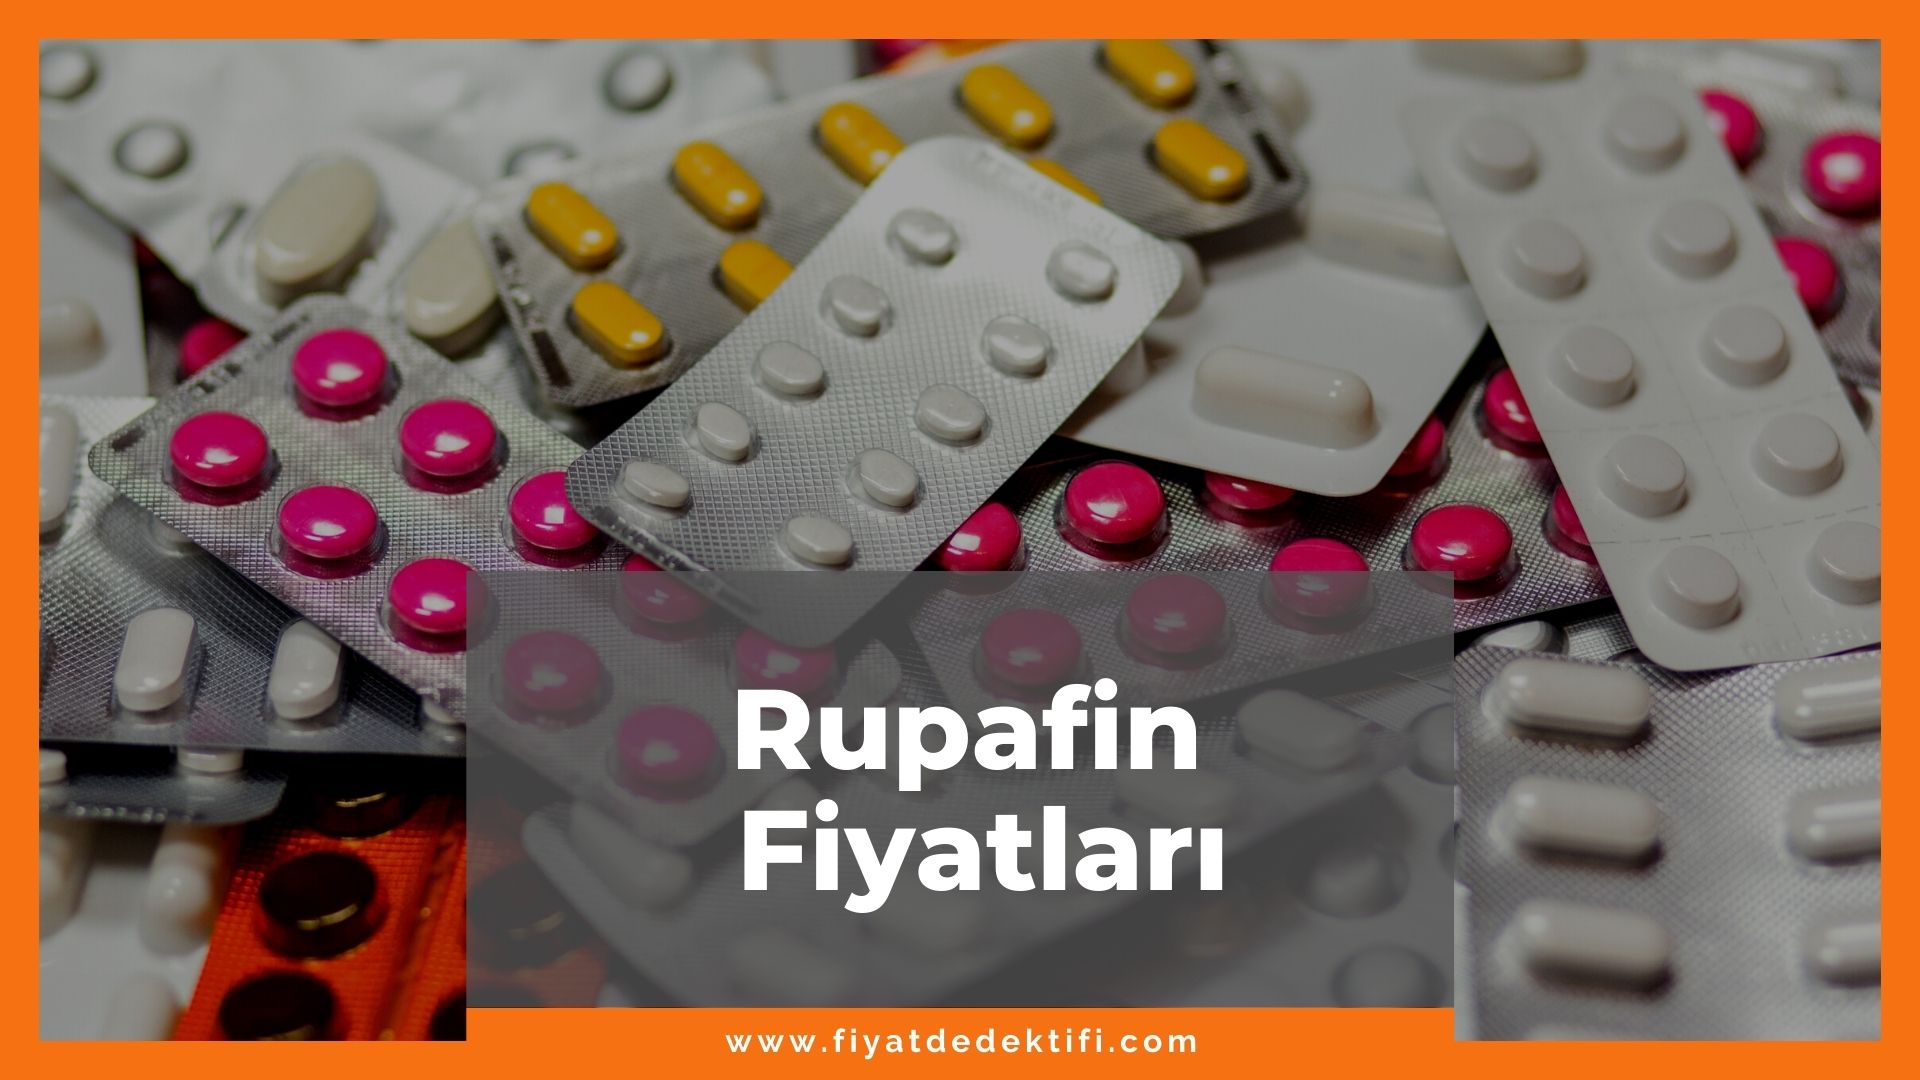 Rupafin Fiyat 2021, Rupafin Fiyatı, Rupafin 10 mg Fiyatı, rupafin zamlandı mı, rupafin zamlı fiyat ne kadar oldu